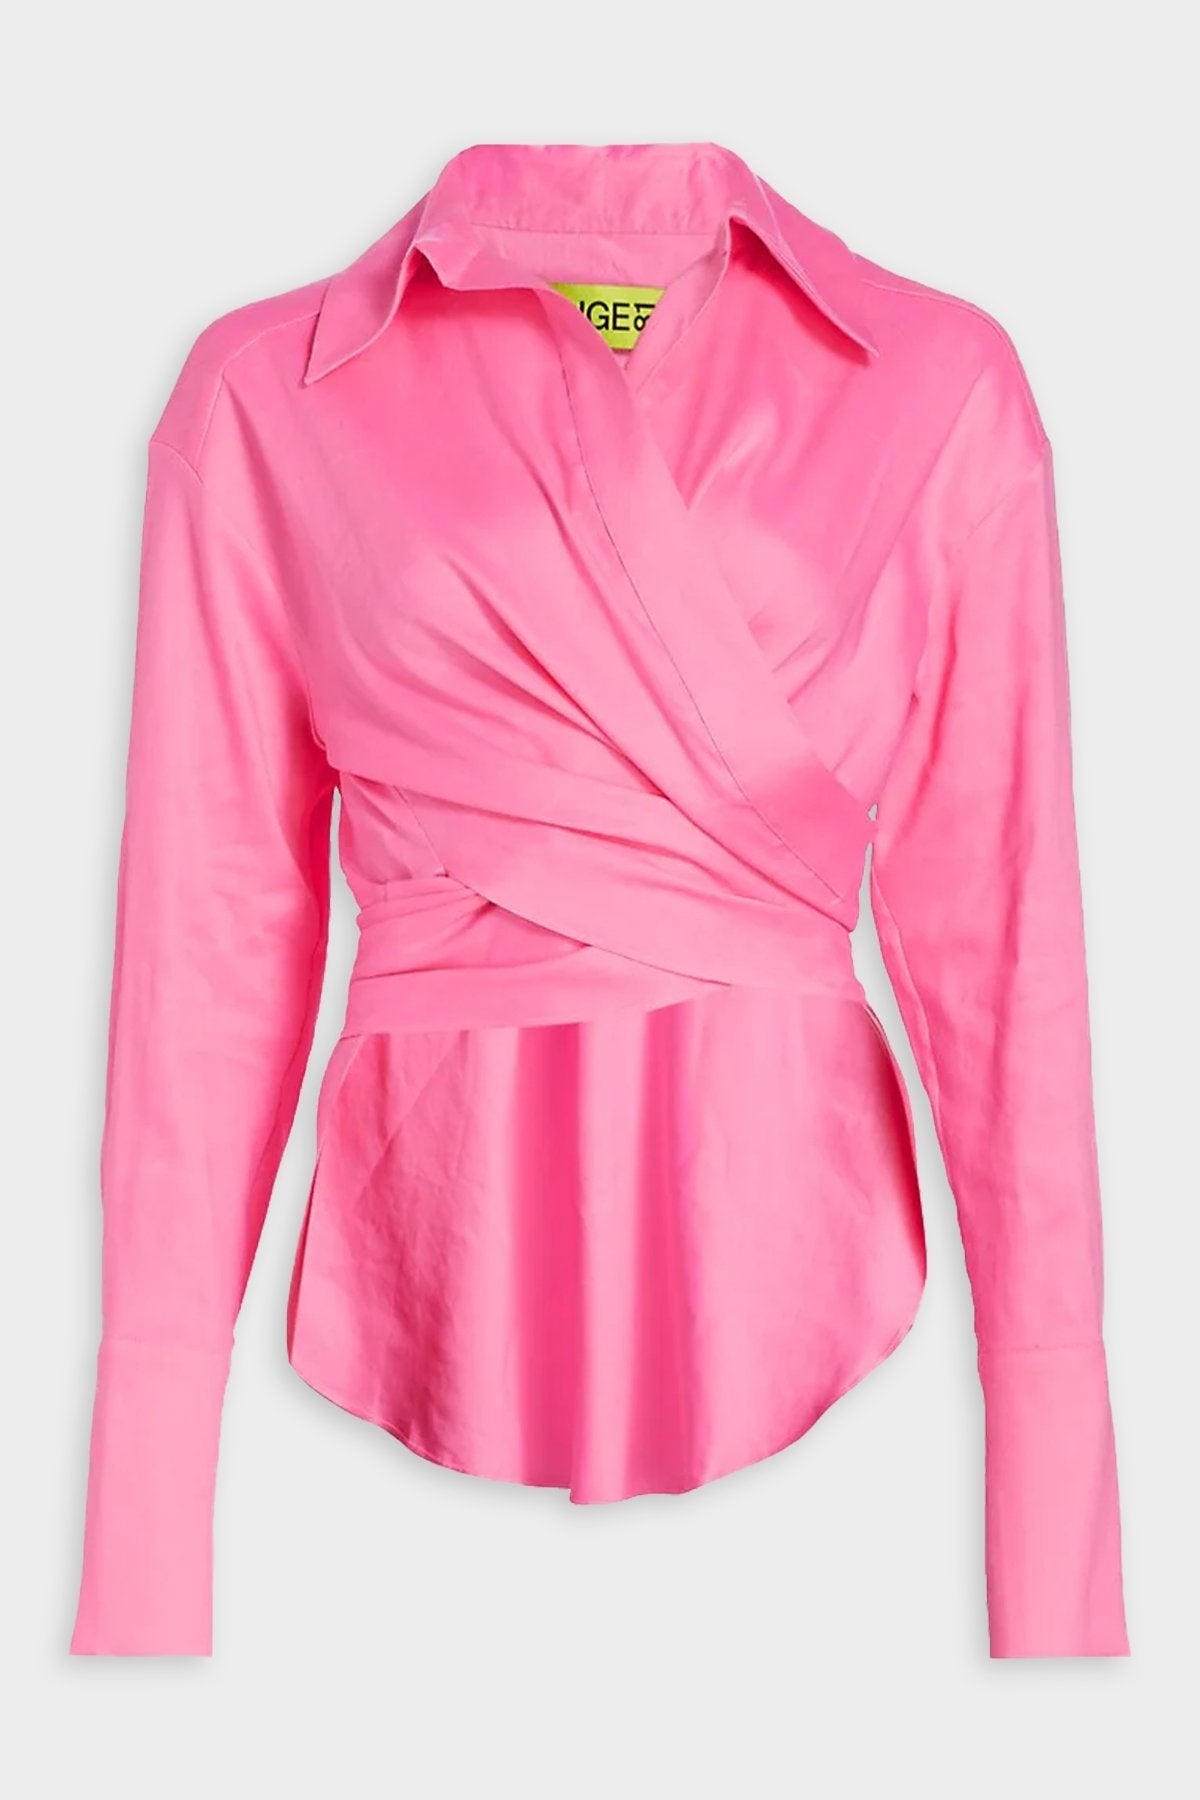 Sabinas Knit Shirt in Hot Pink - shop-olivia.com